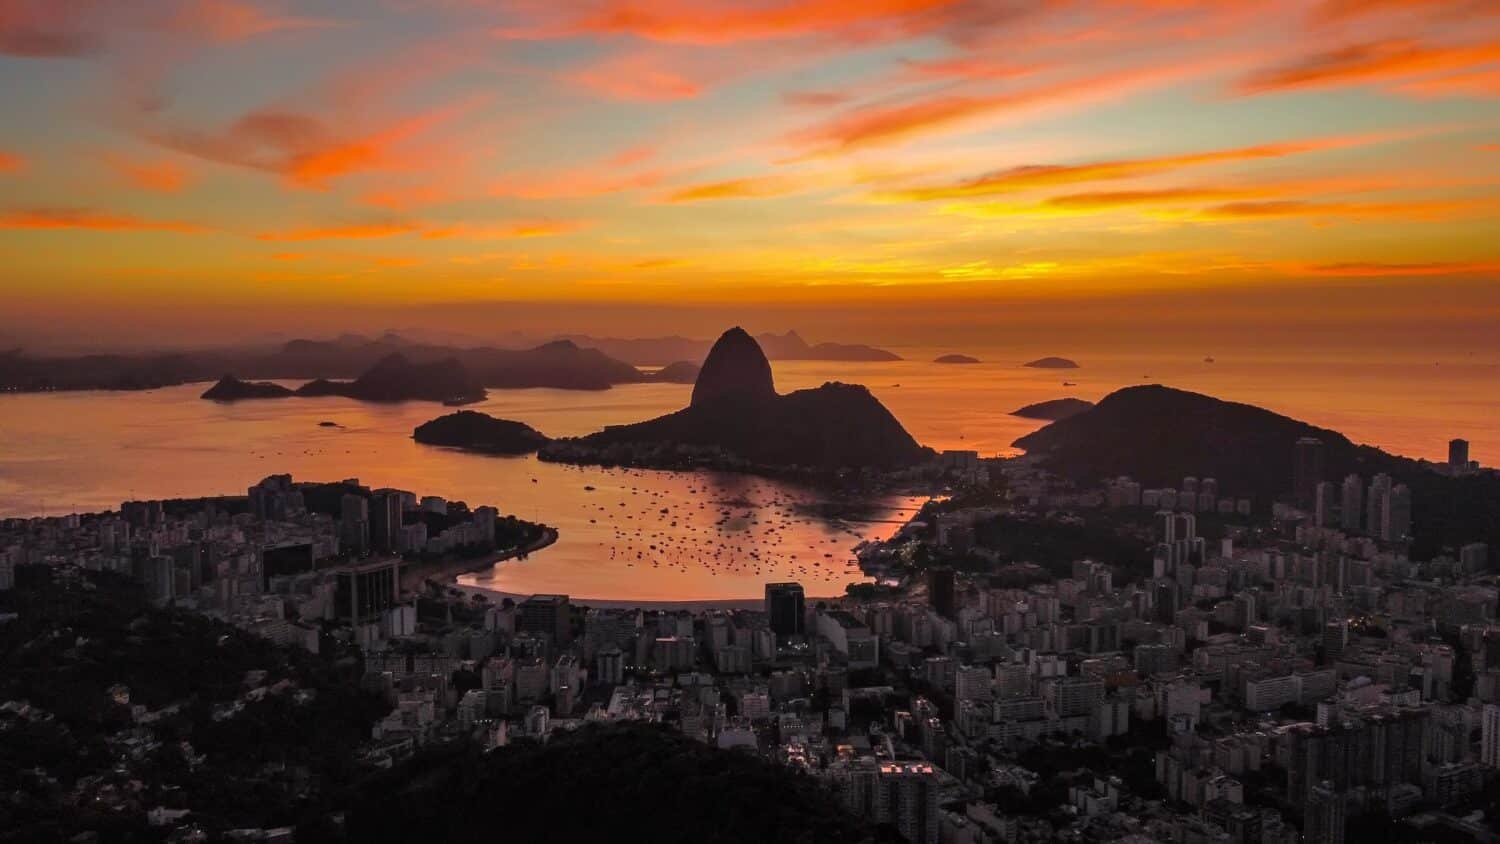 Baía de Guanabara ao pôr do sol no Rio de Janeiro - Foto: Gugelmim via Pixabay